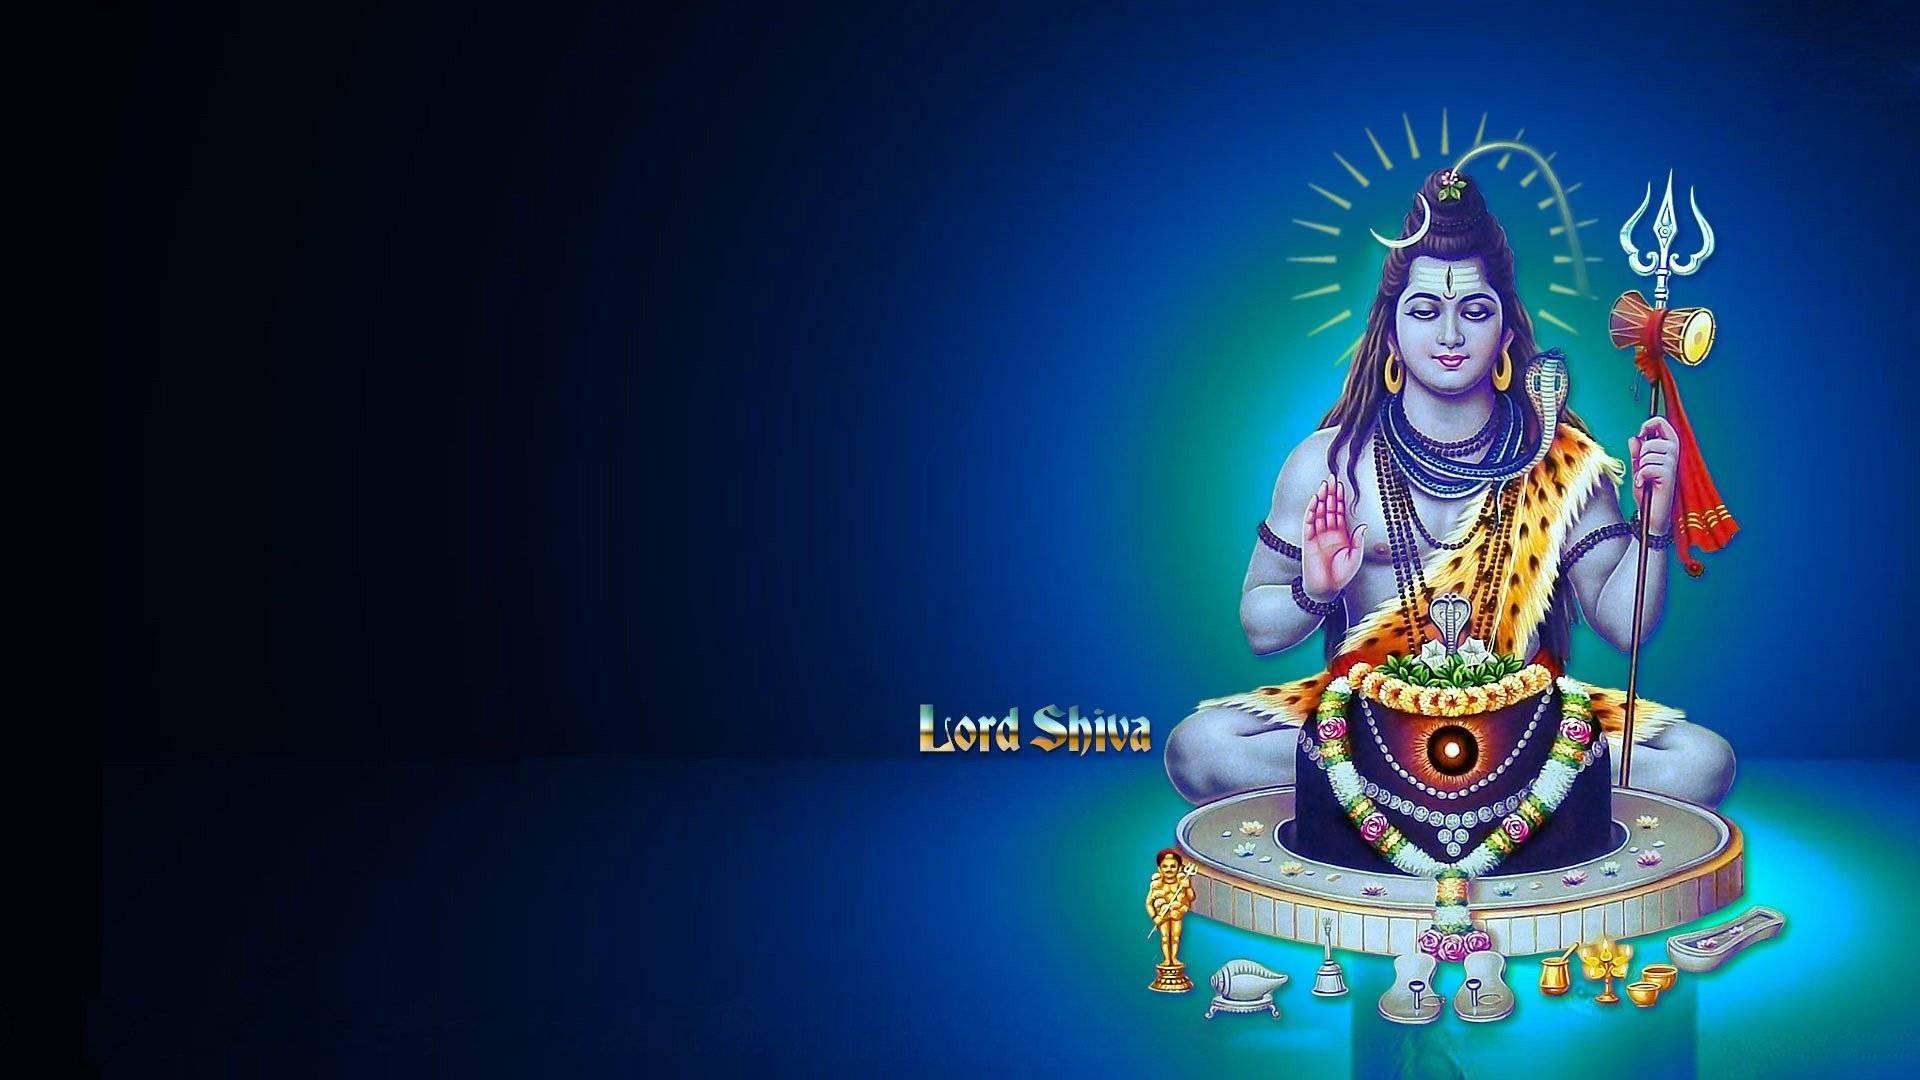 HD Lord Shiva Bholenath Image